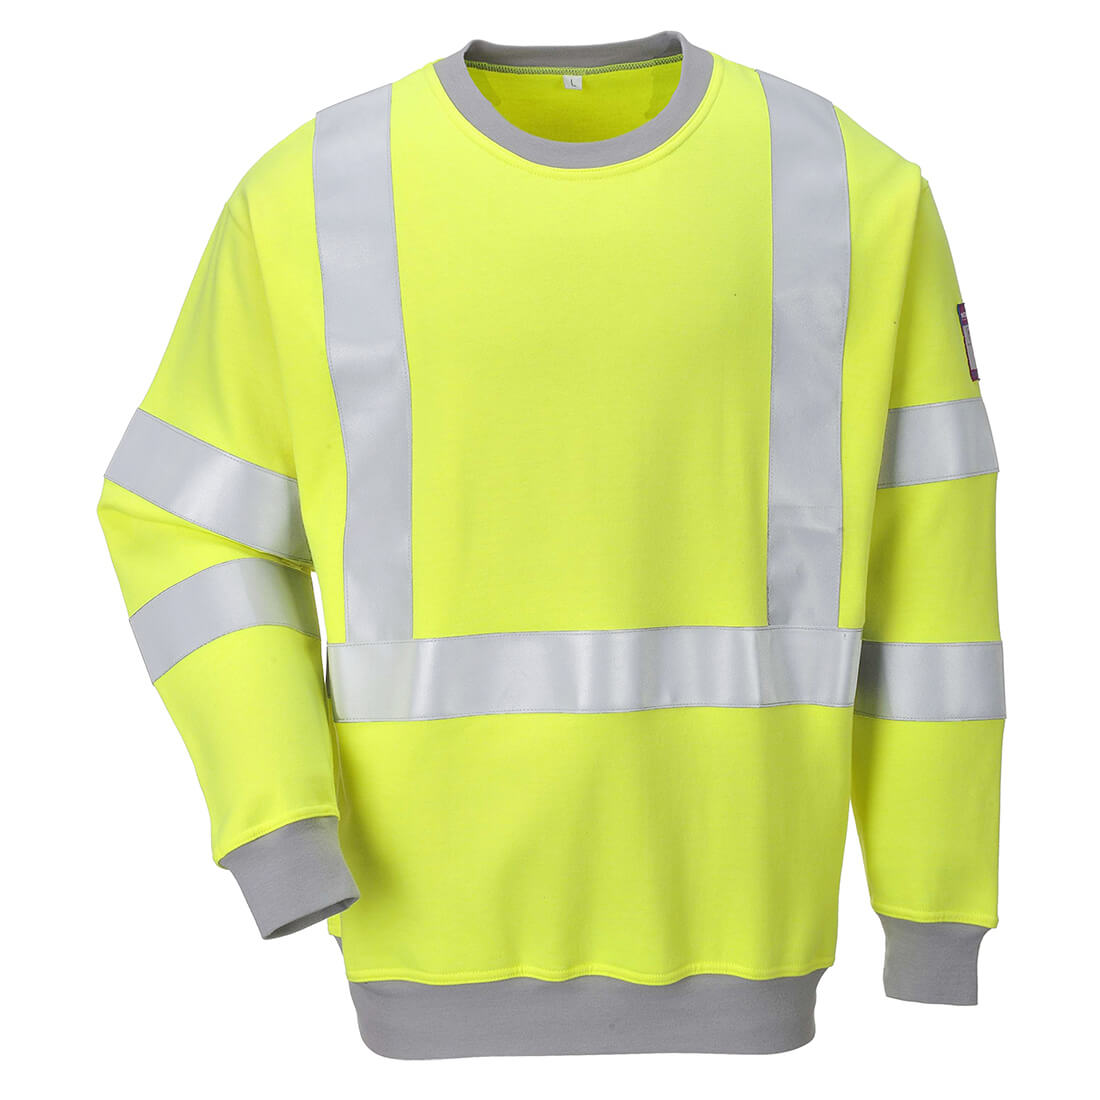 Image of Modaflame Mens Flame Resistant Hi Vis Sweatshirt Yellow L